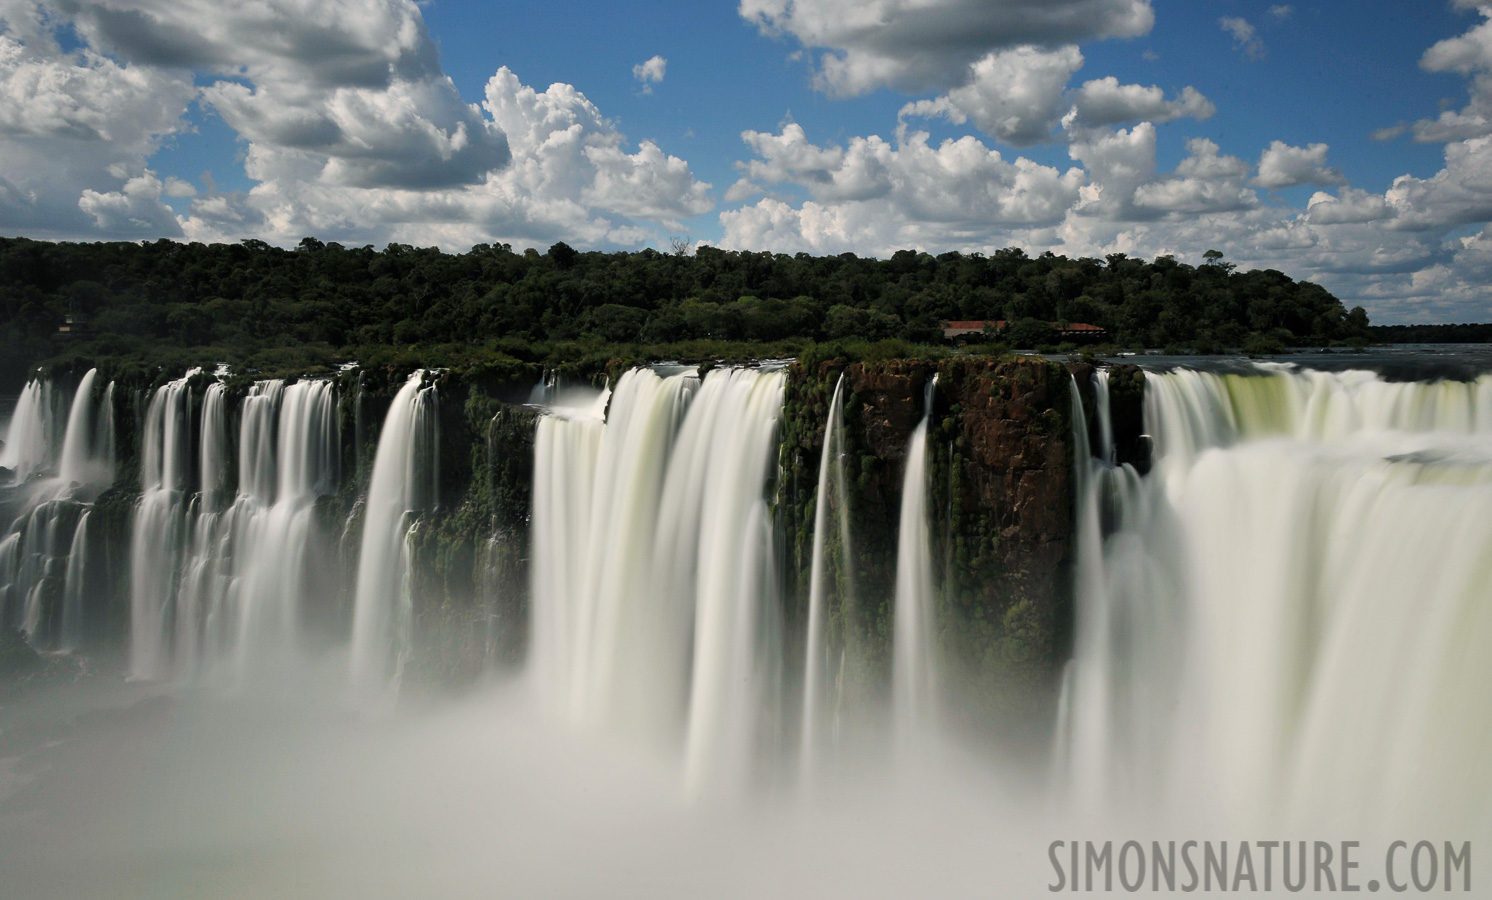 Cataratas del Iguazu [28 mm, 4.0 sec at f / 22, ISO 200]